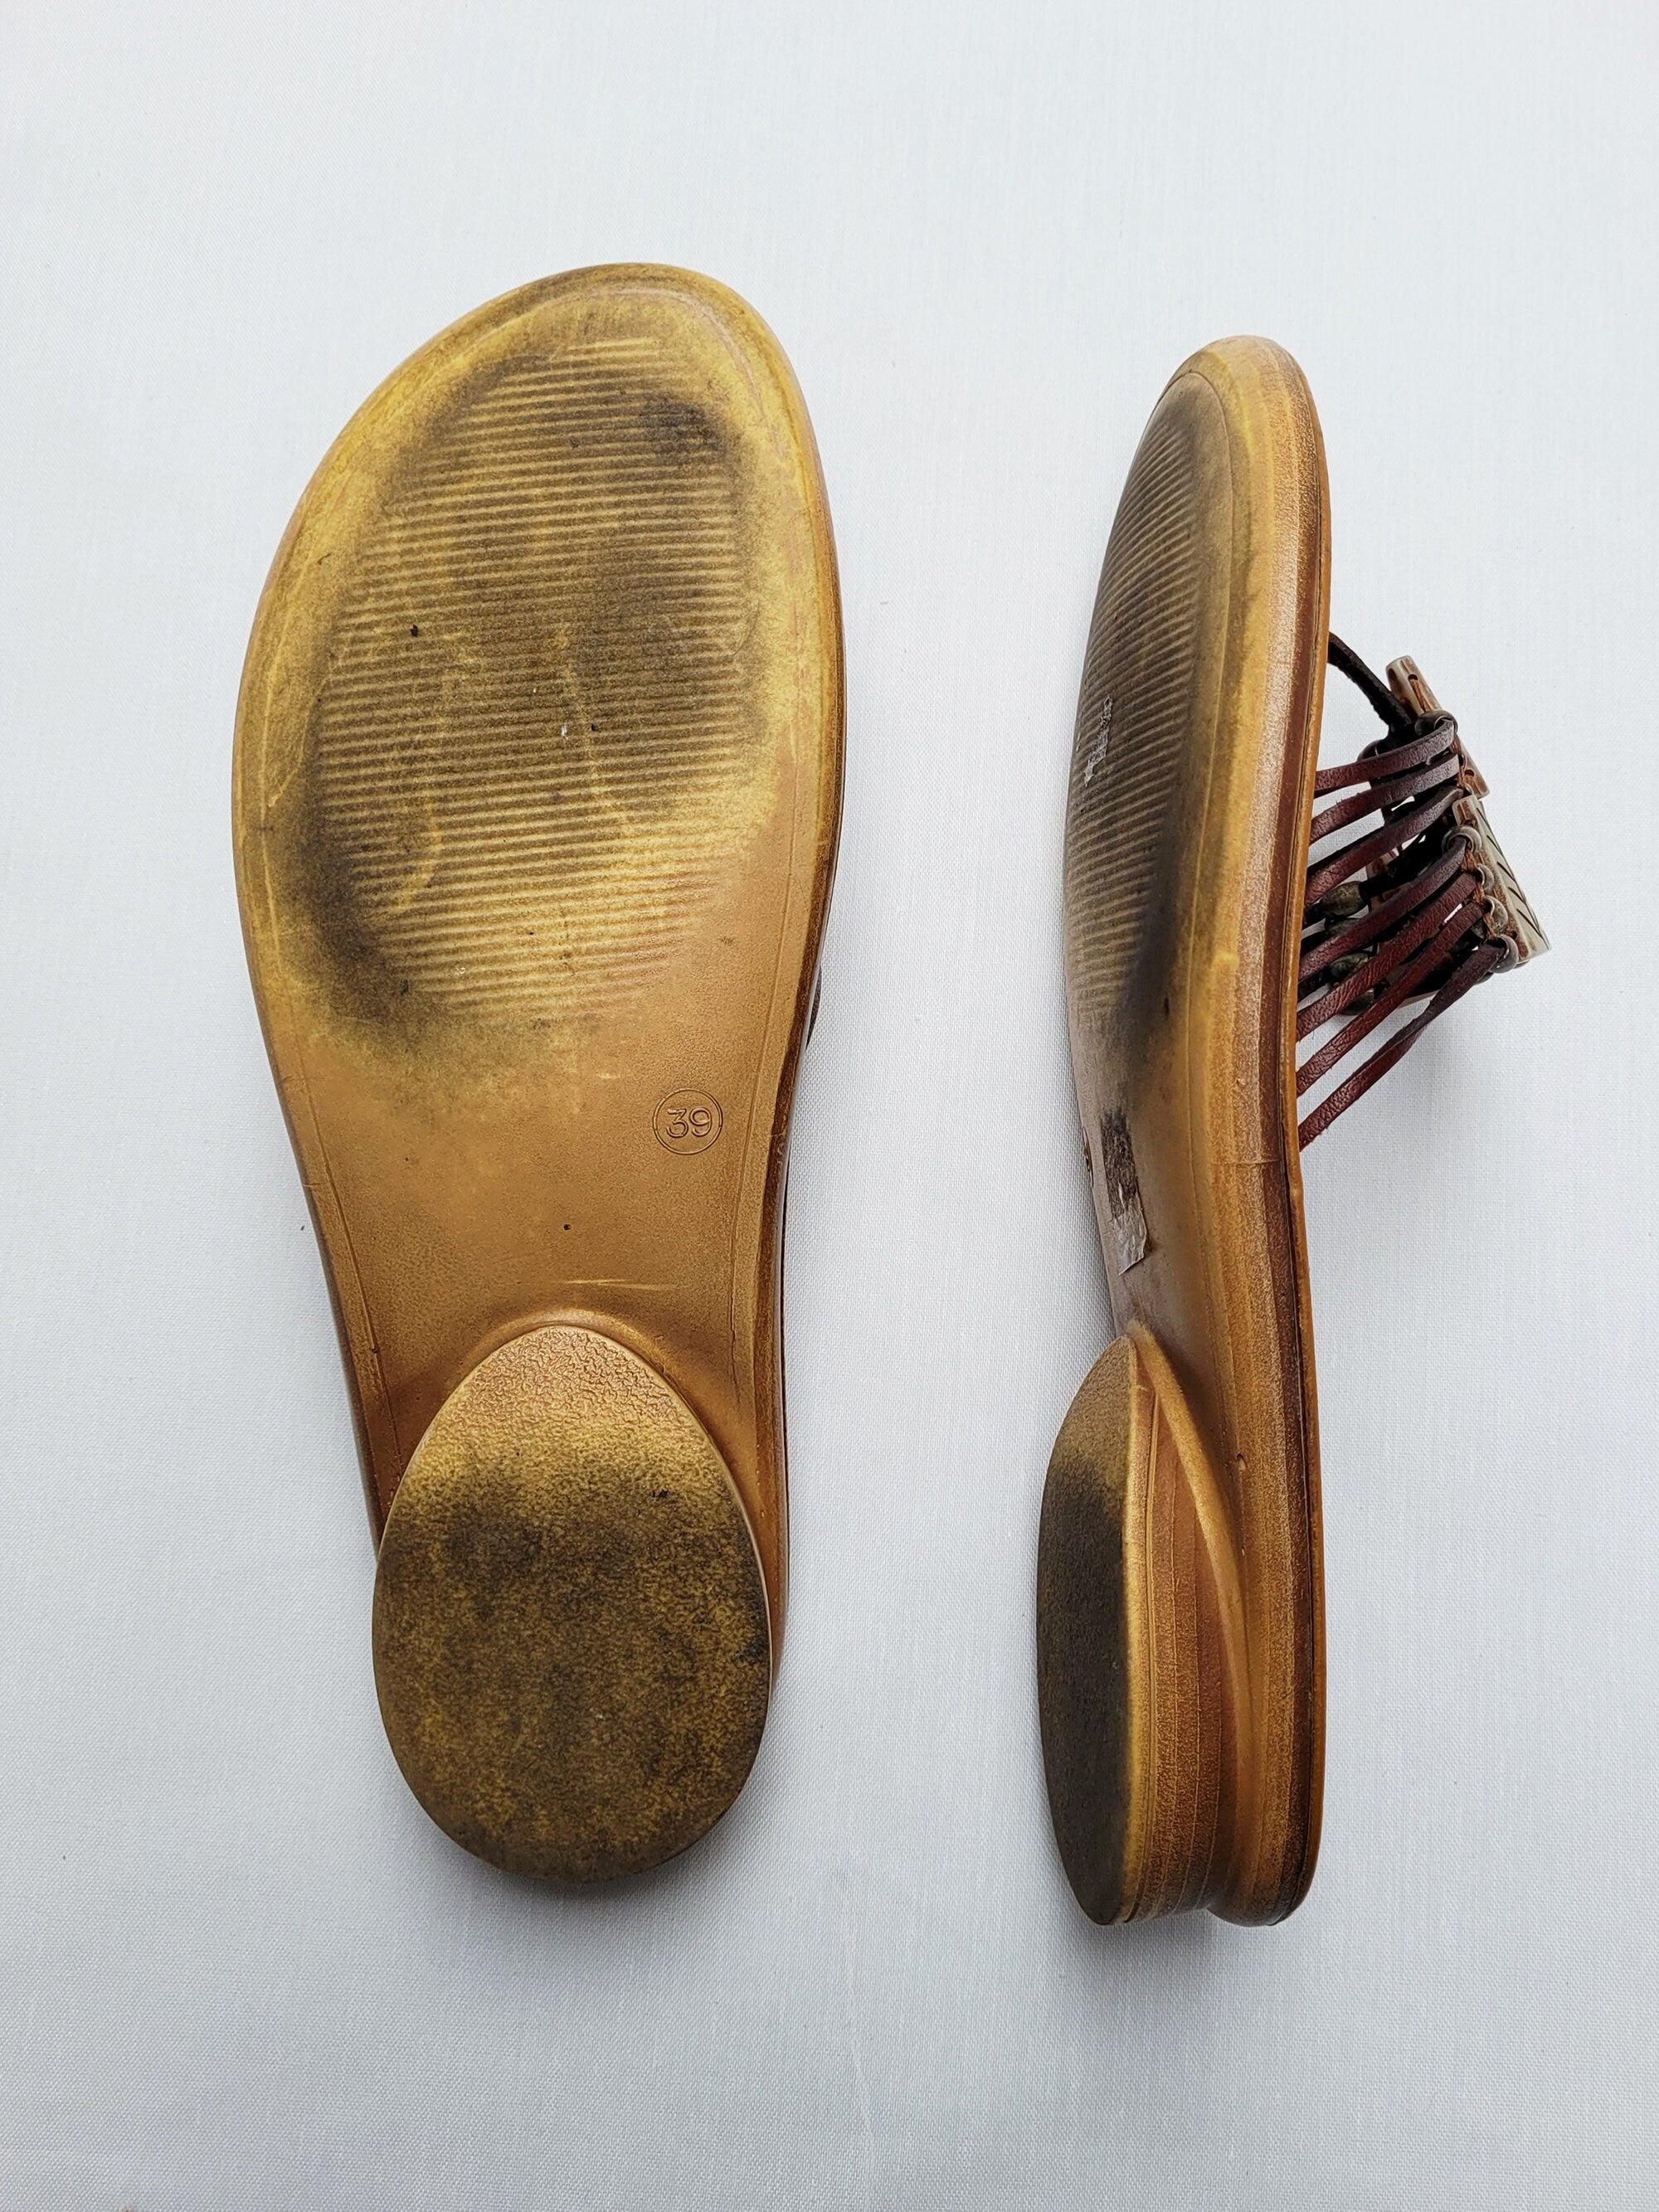 Vintage 90s leather beaded brown split toe slides sandals